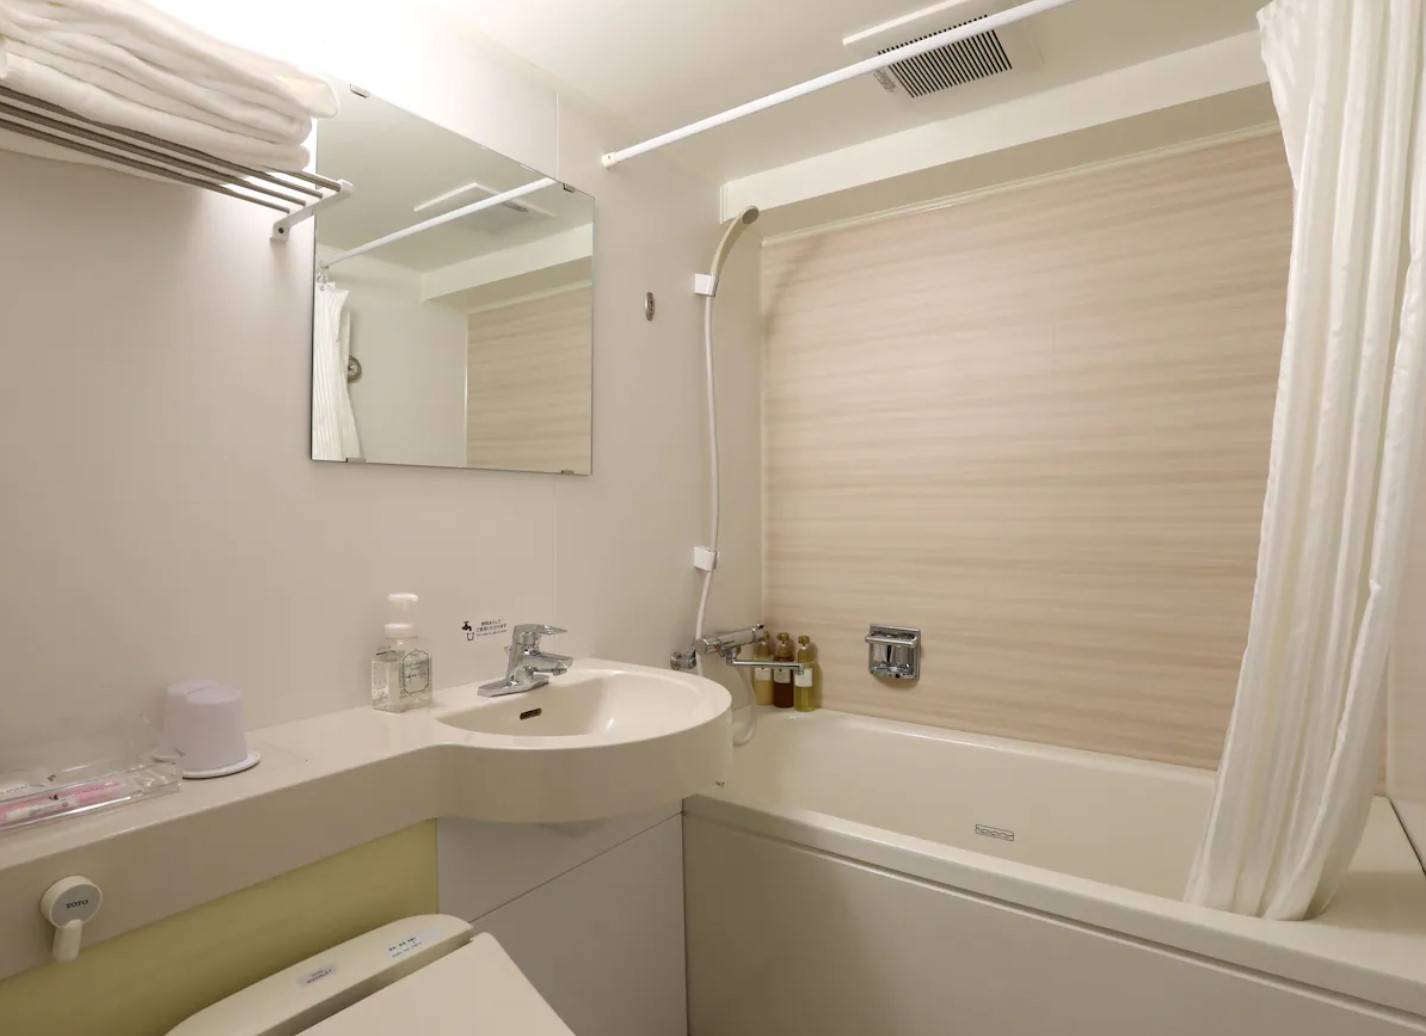 京都酒店 廁所與一般商務酒店設備相約